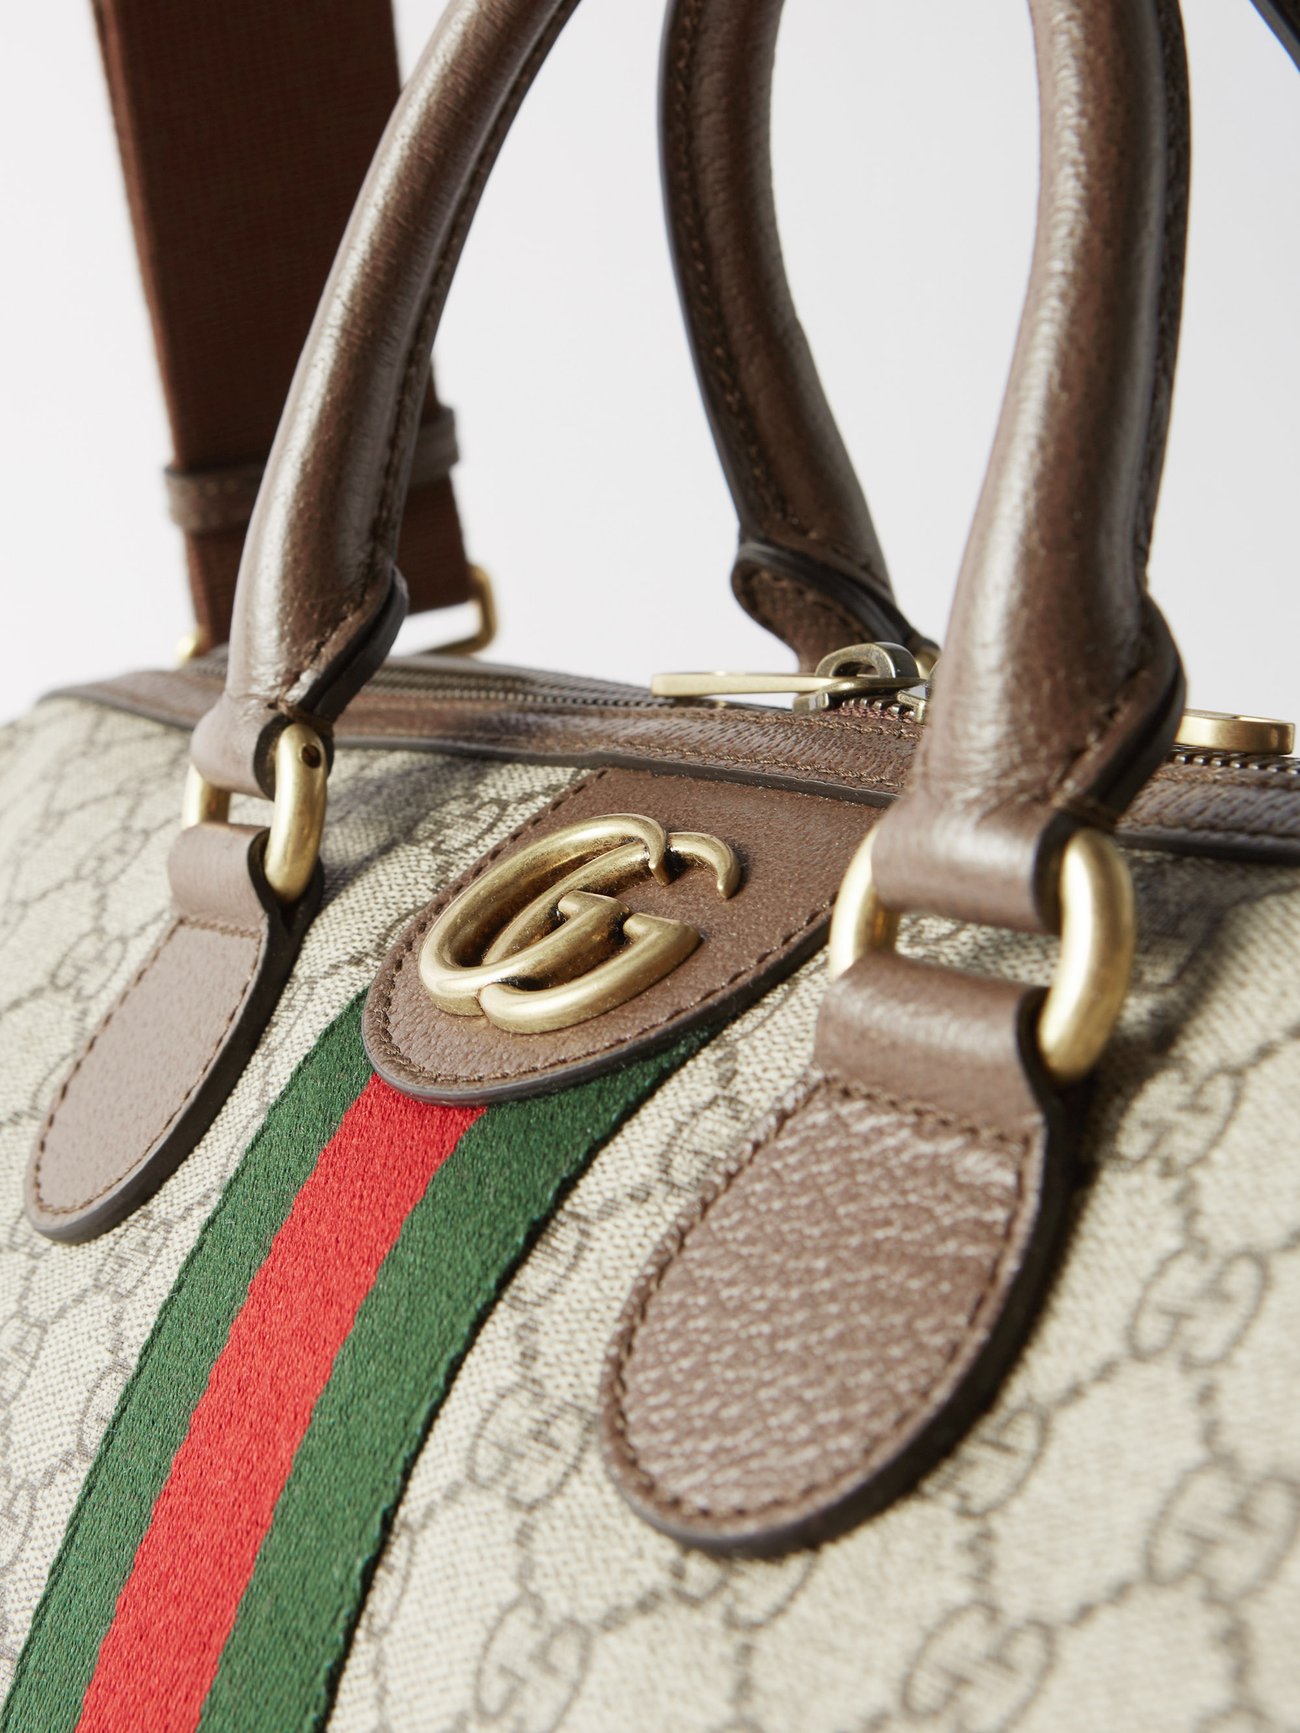 Gucci Savoy Medium Canvas Duffel Bag in Beige - Gucci